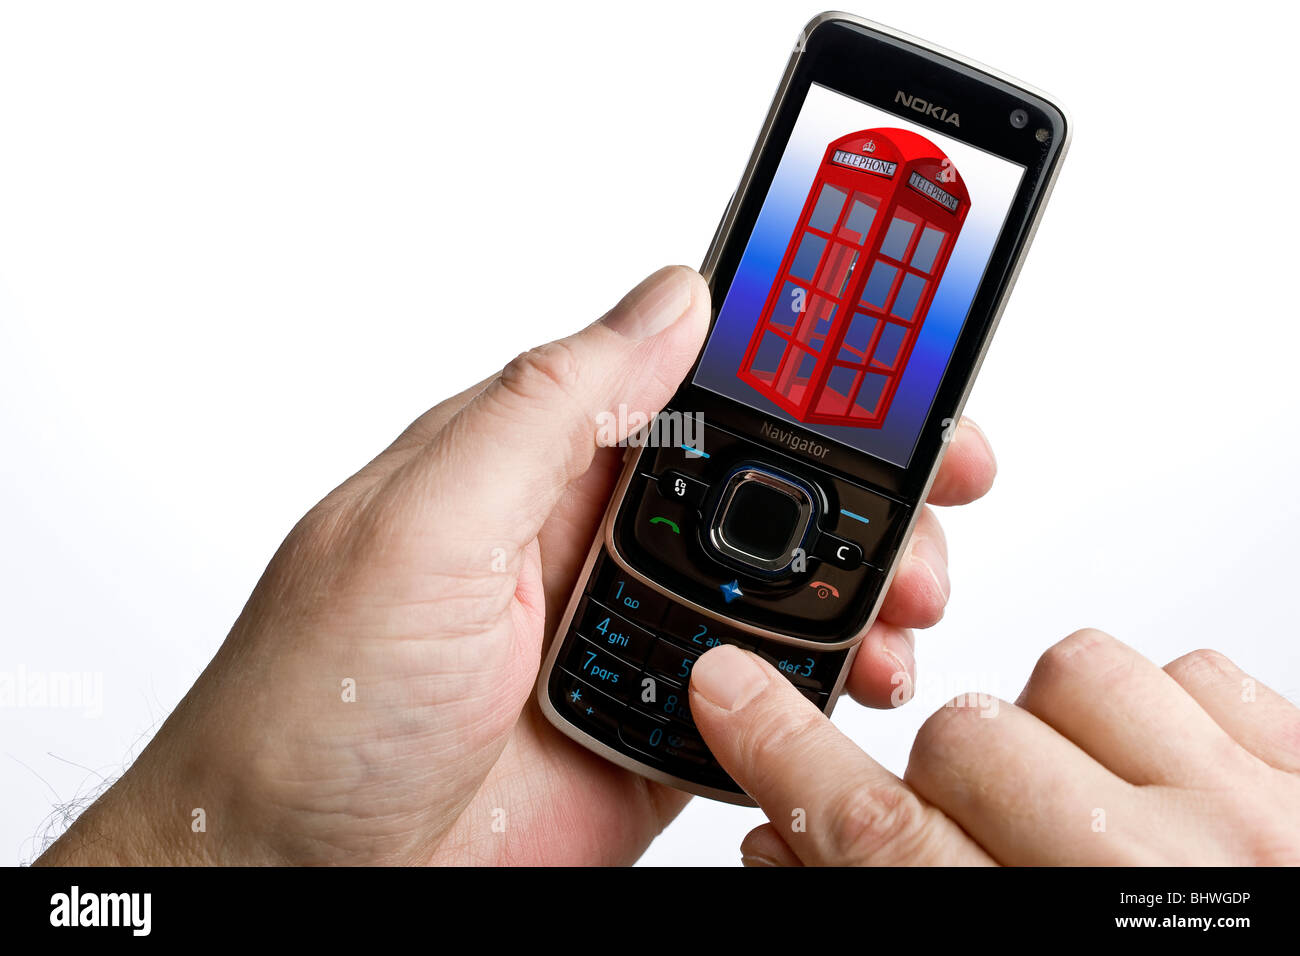 In prossimità di un telefono cellulare con un vecchio stile enlish telefono pubblico casella sullo schermo Foto Stock